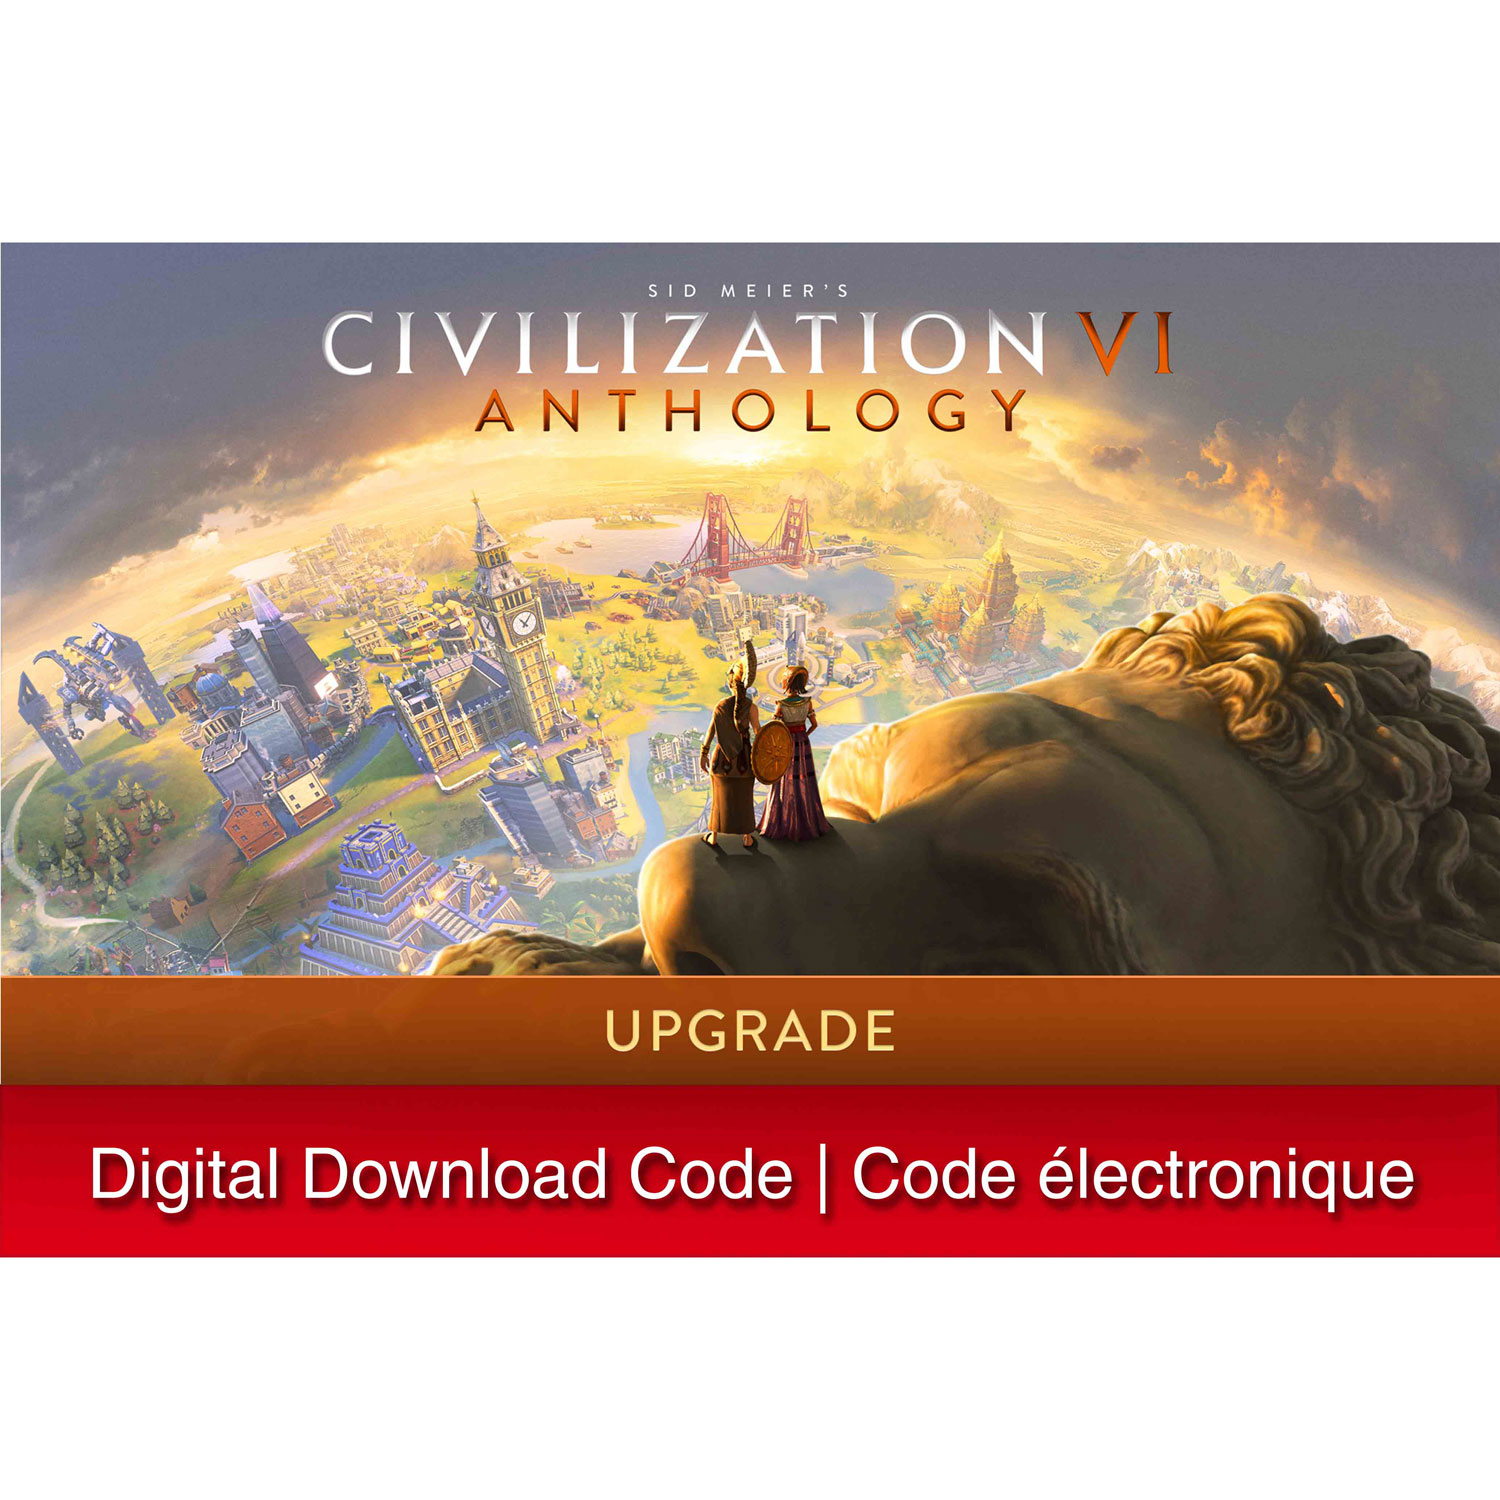 Sid Meier's Civilization VI Anthology Upgrade (Switch) - Digital Download